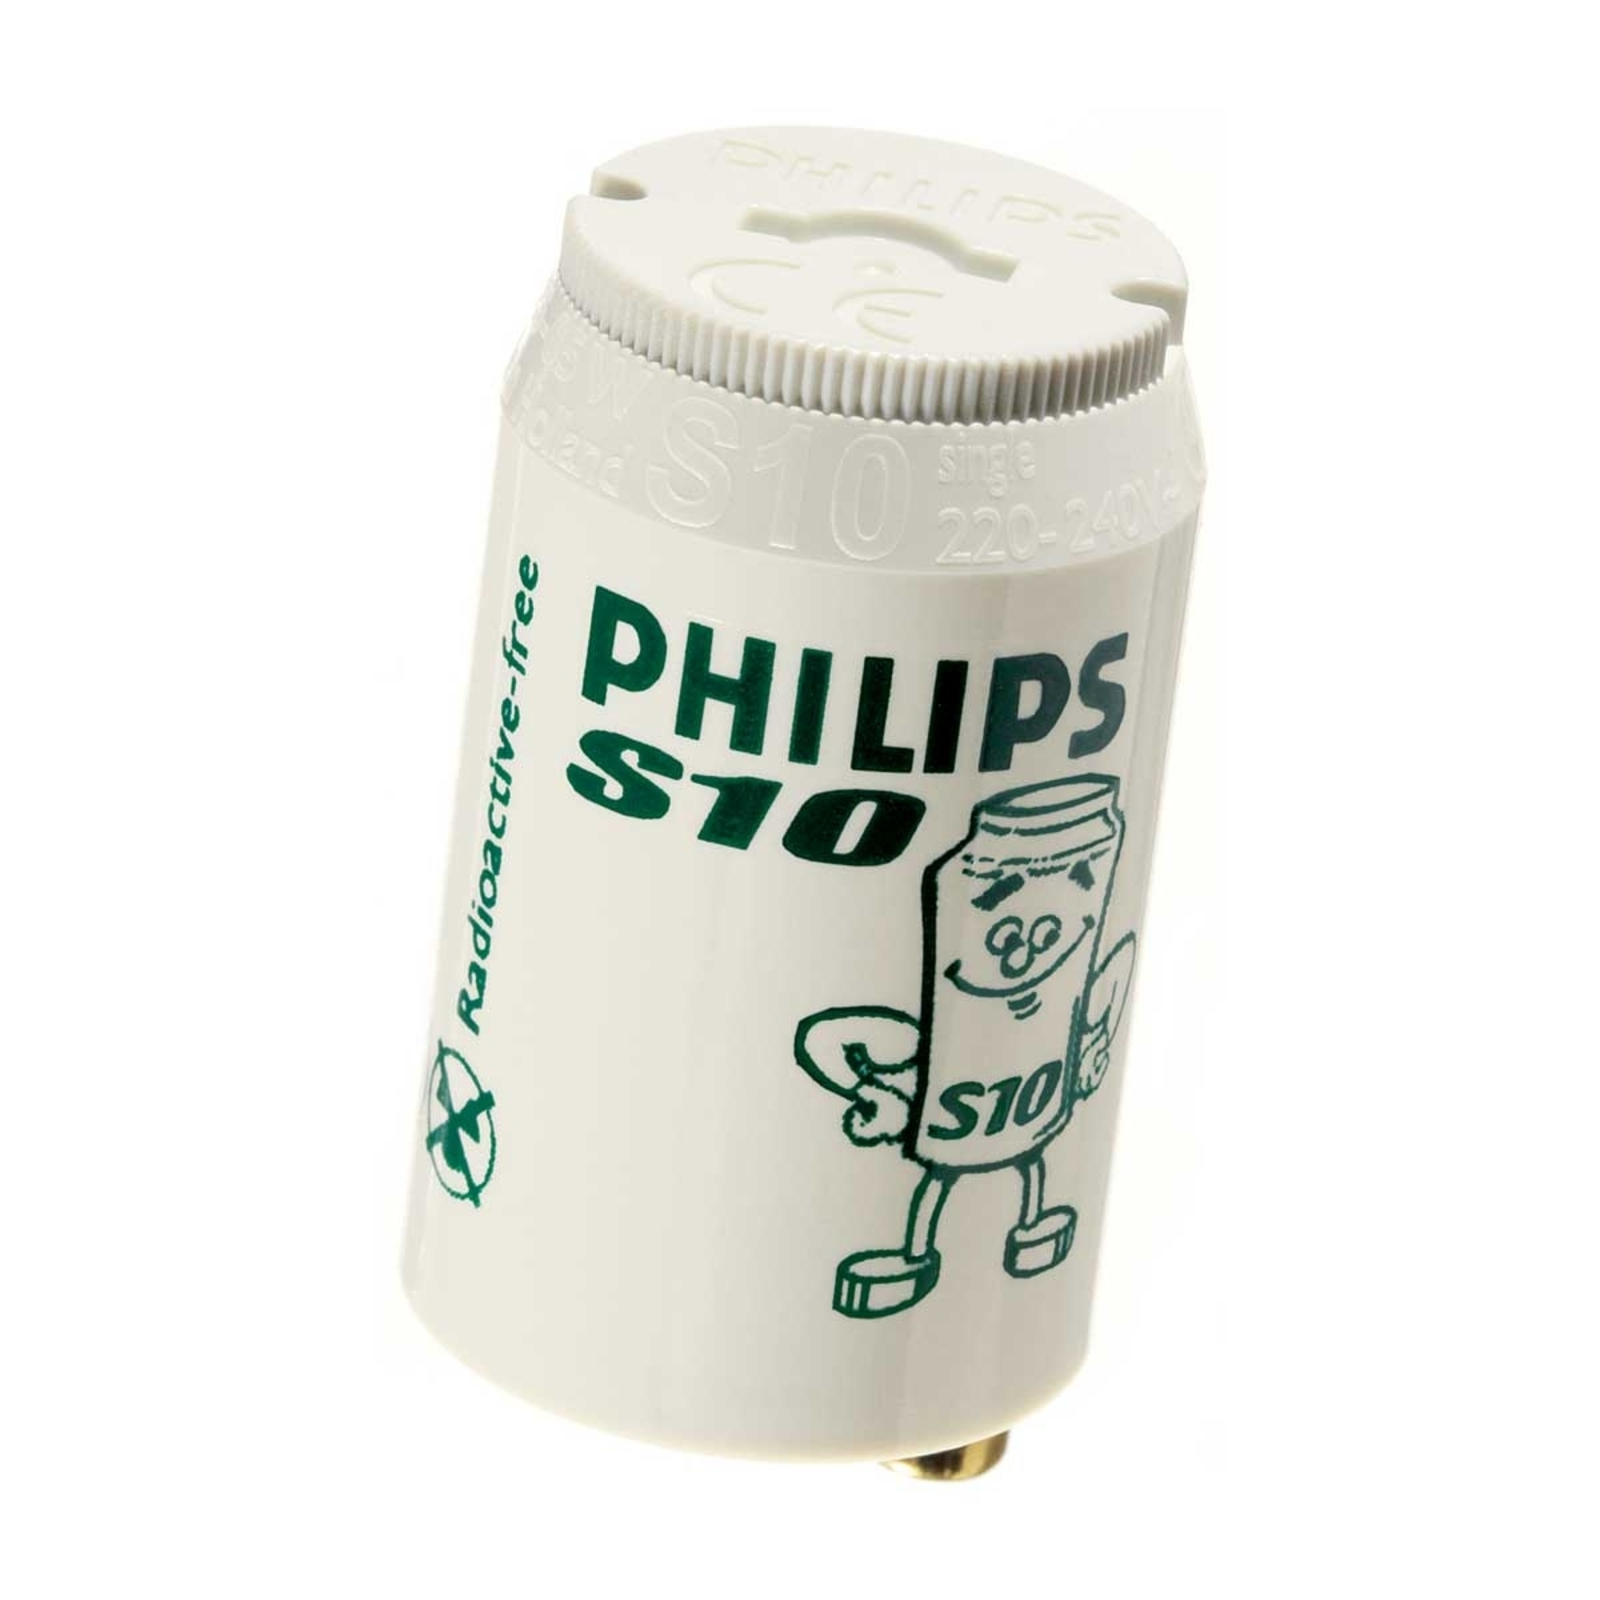 10 StückStarter Philips S10 für Leuchtstoffröhren von 4-65 Watt NEU 